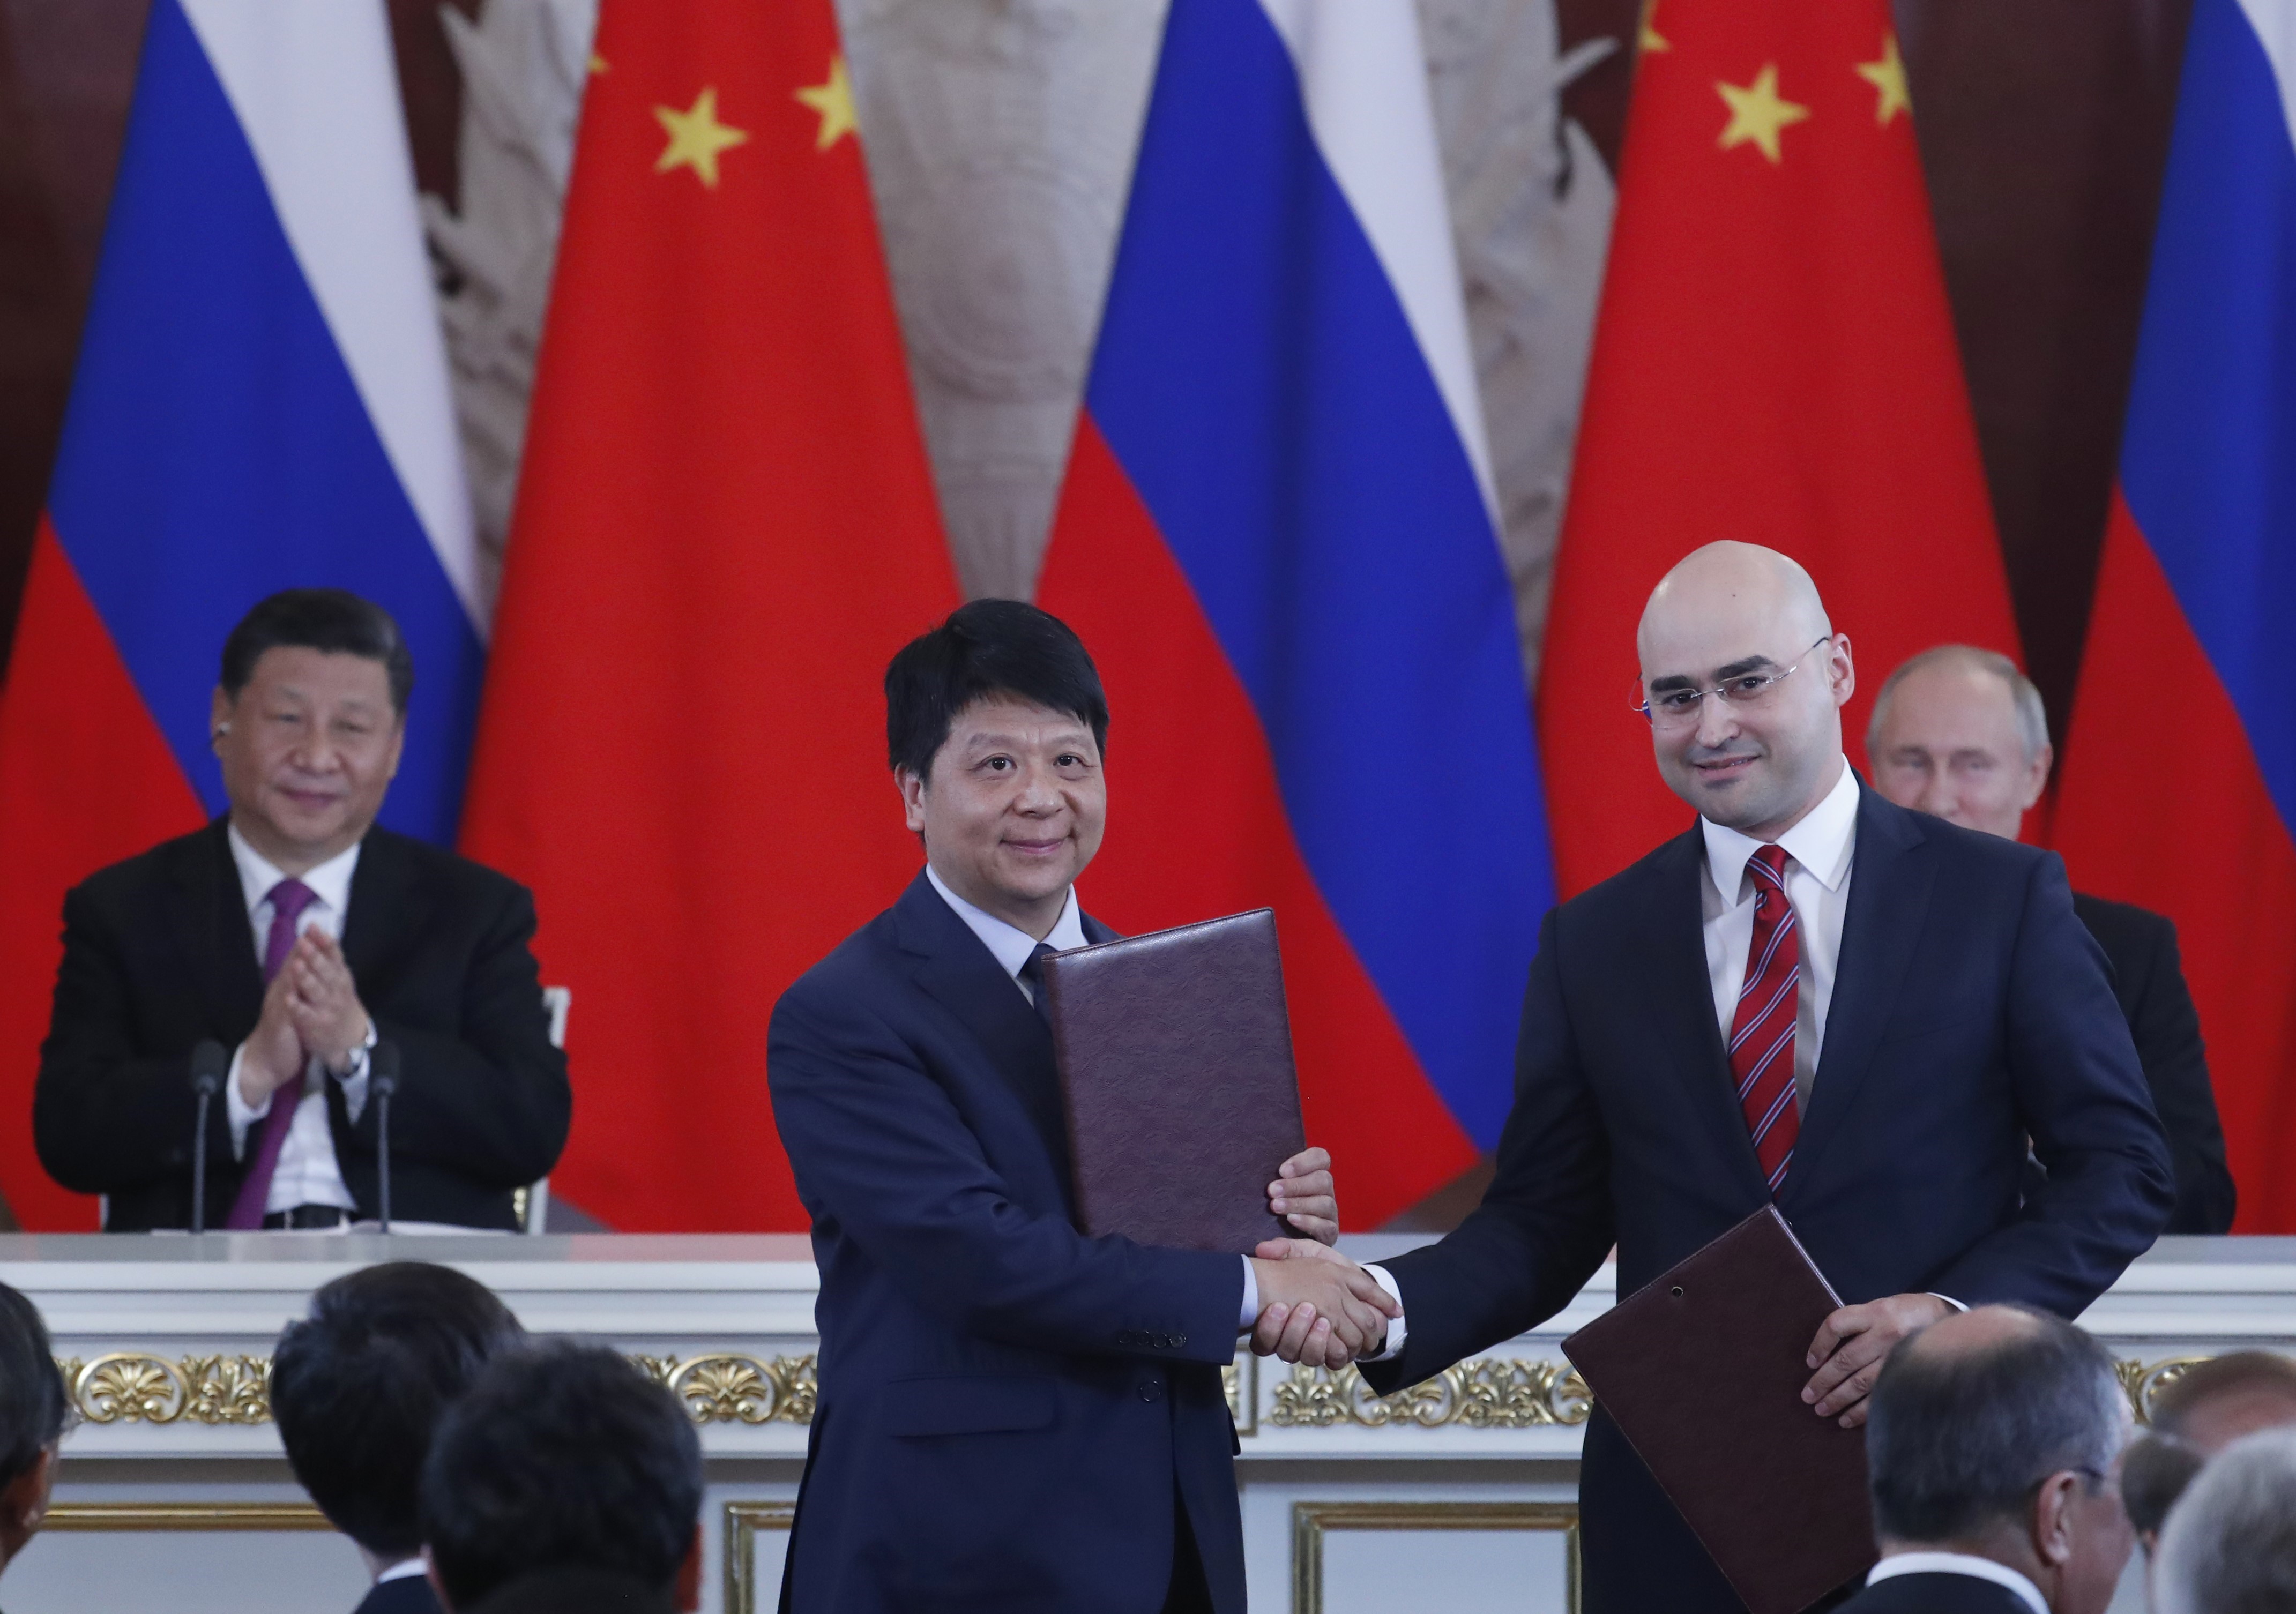 Tổng thống Nga Vladimir Putin (phải) và Chủ tịch Trung Quốc Tập Cận Bình (trái) chứng kiến lễ ký thỏa thuận hợp tác giữa Chủ tịch kiêm Giám đốc điều hành MTS Alexei Kornya (thứ 2, phải) và Chủ tịch luân phiên Huawei Quách Bình (thứ 2, trái) tại Moskva, ngày 5/6/2019. (Nguồn: AFP/TTXVN)